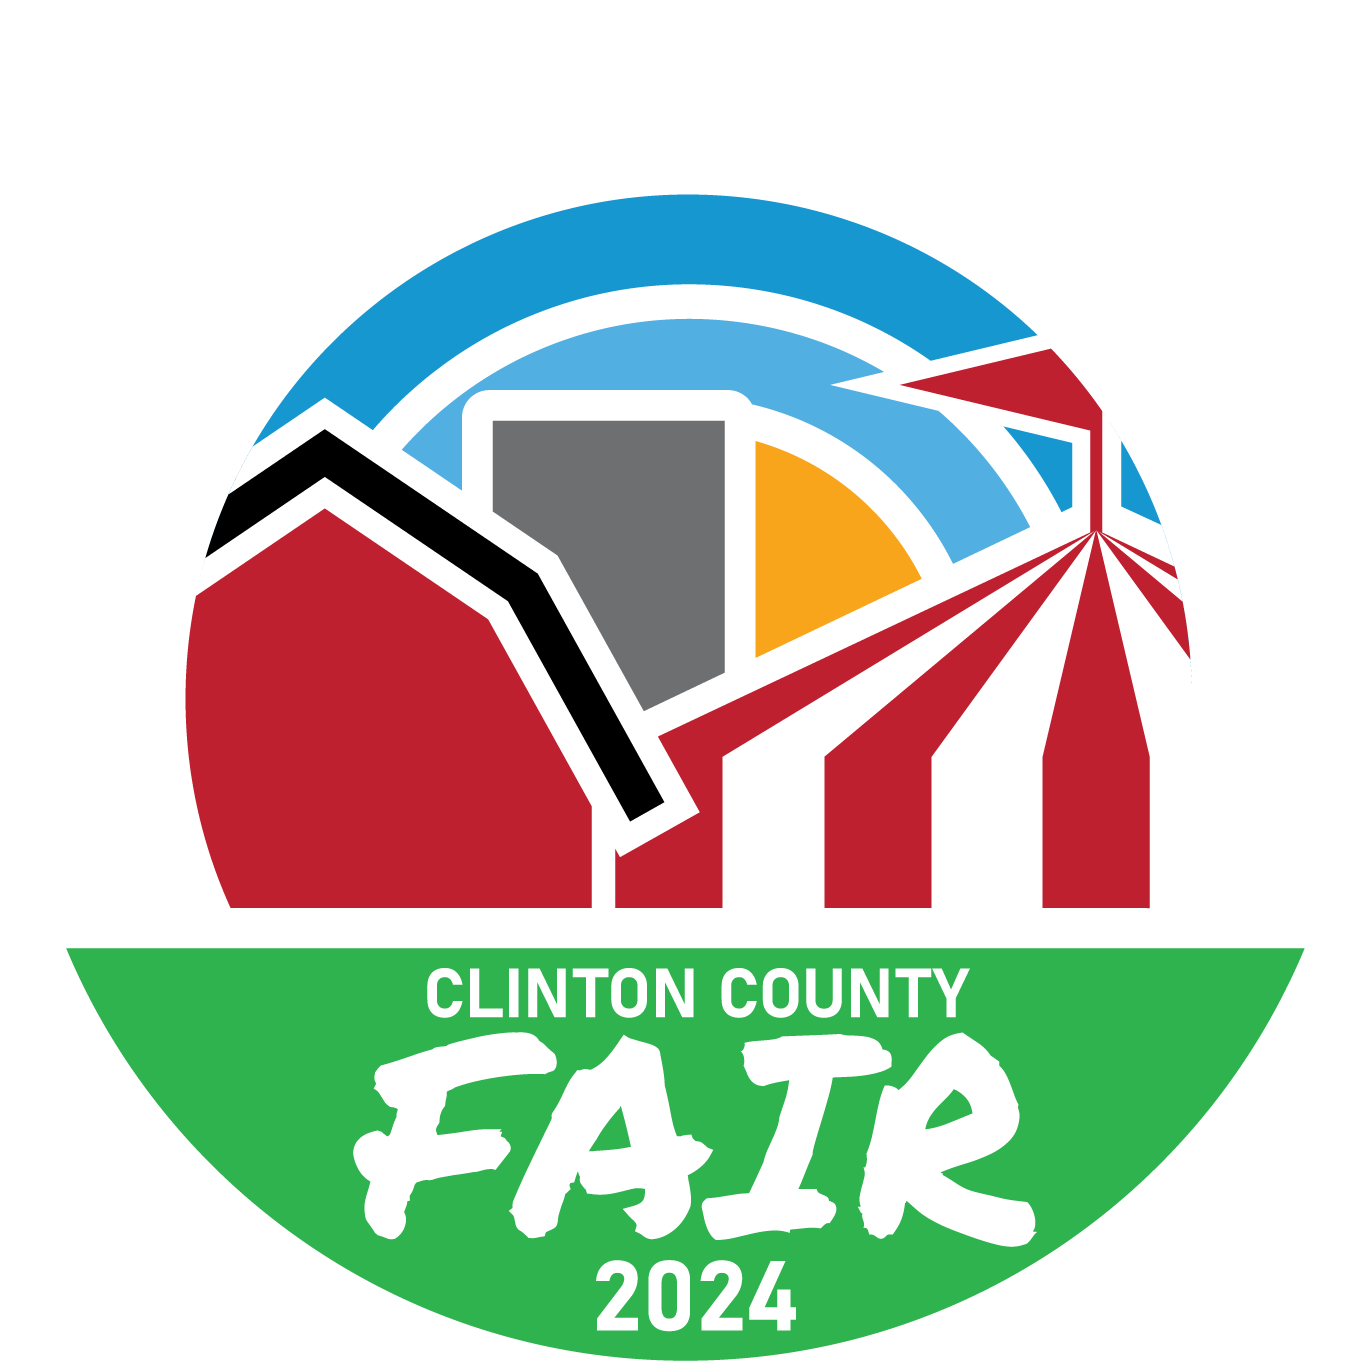 Clinton County Fair 2024 Logo